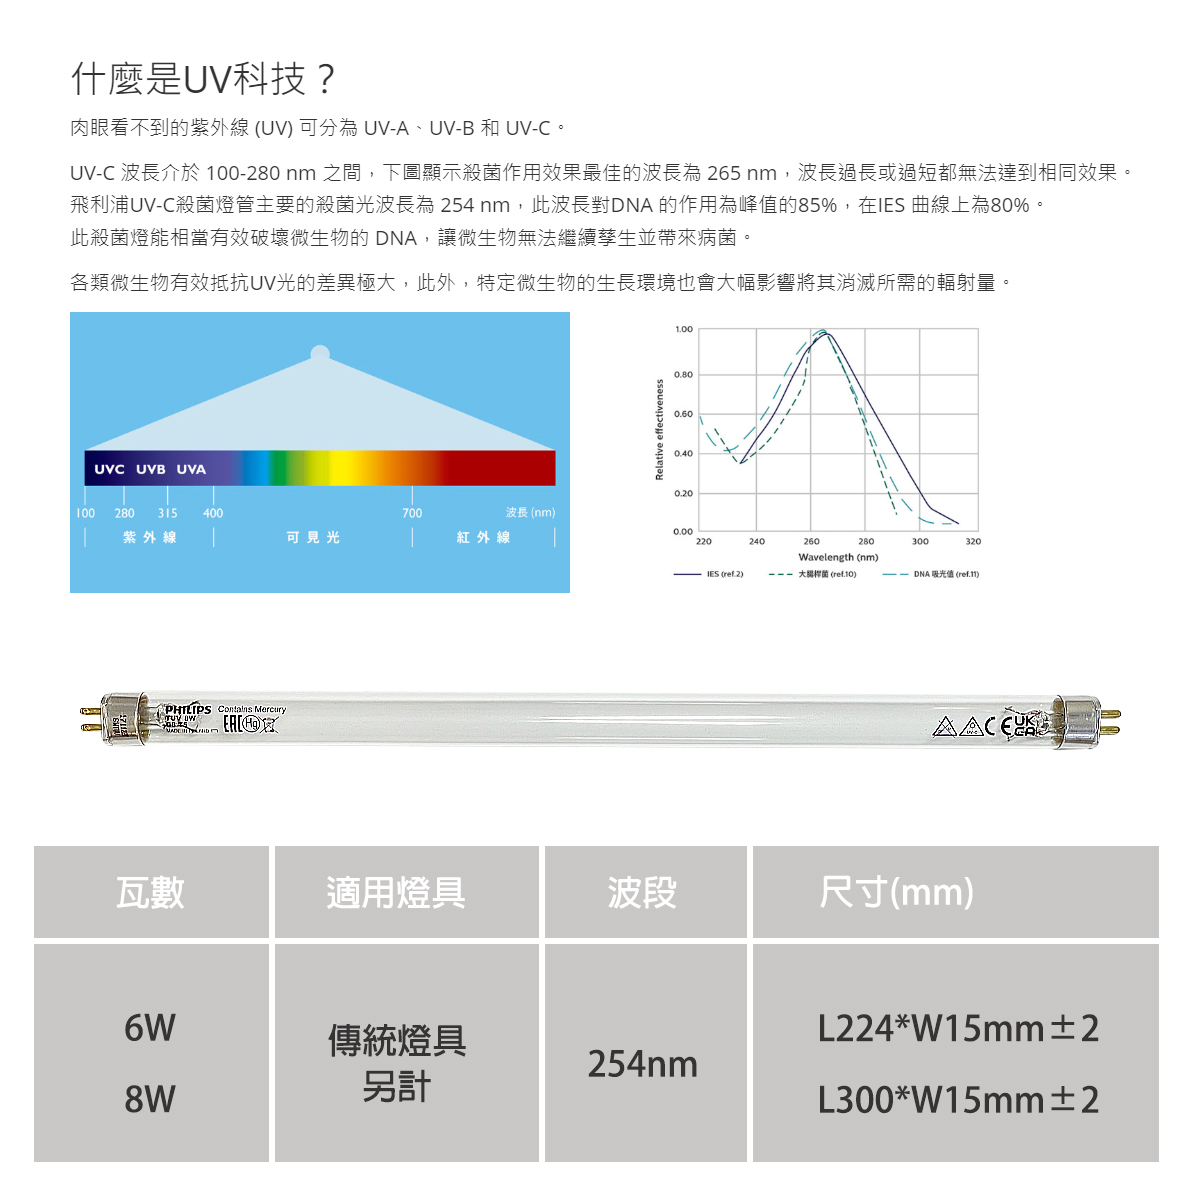 【飛利浦】UVC紫外線殺菌燈管 T5 6W 8W 需搭配傳統燈座使用